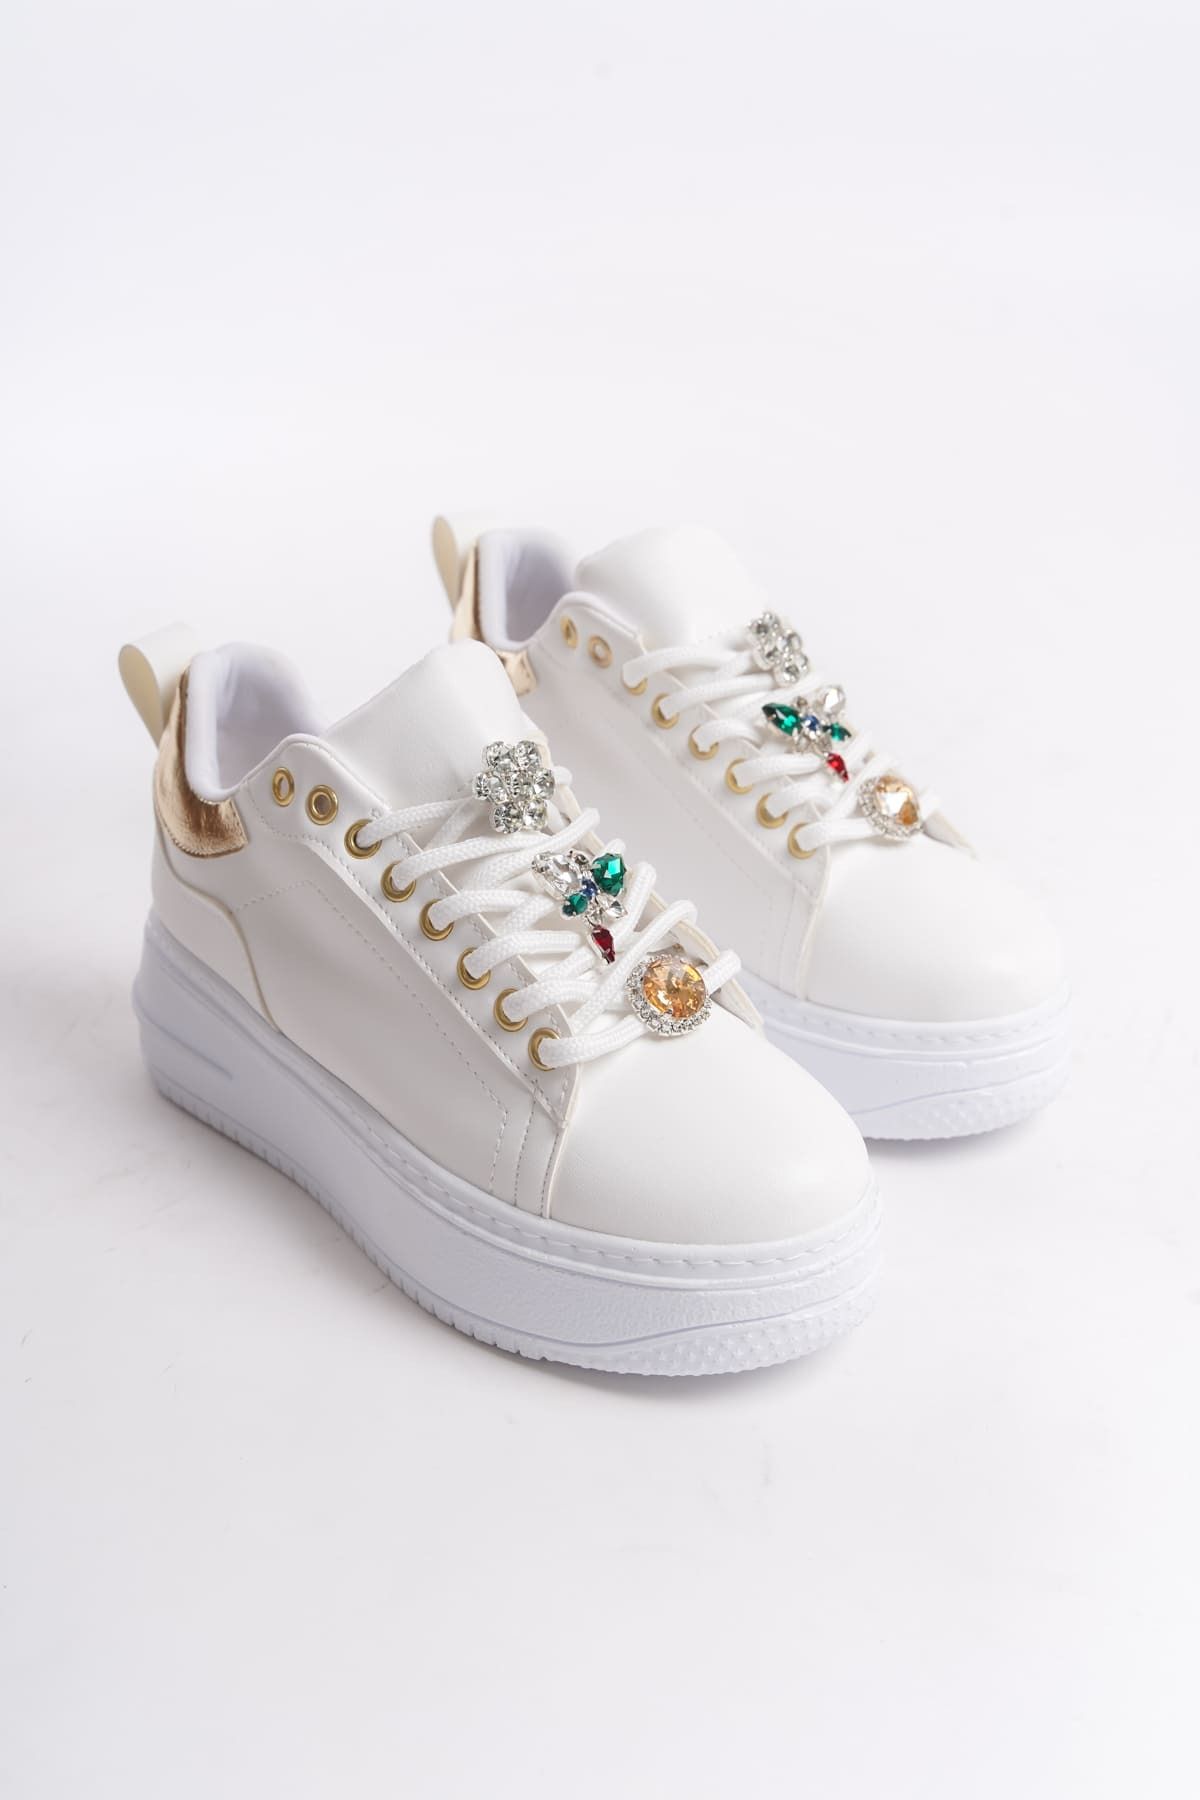 BZ Moda ISABELLA Bağcıklı Ortopedik Taban Renkli Taş Dekorlu Kadın Sneaker Ayakkabı BT Beyaz/Altın